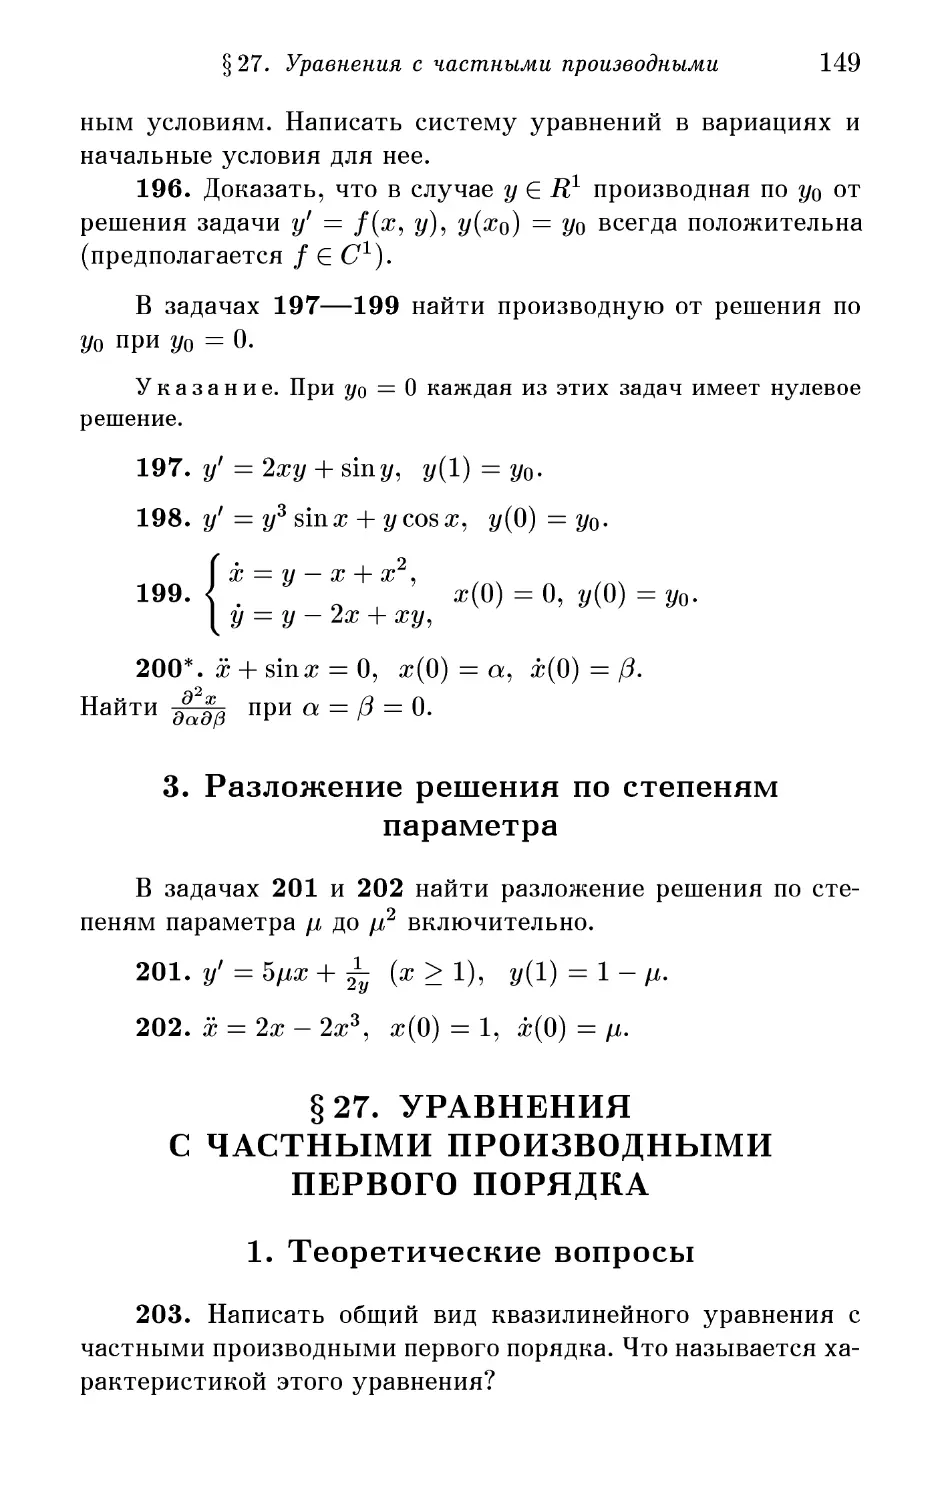 § 27. Уравнения с частными производными первого порядка